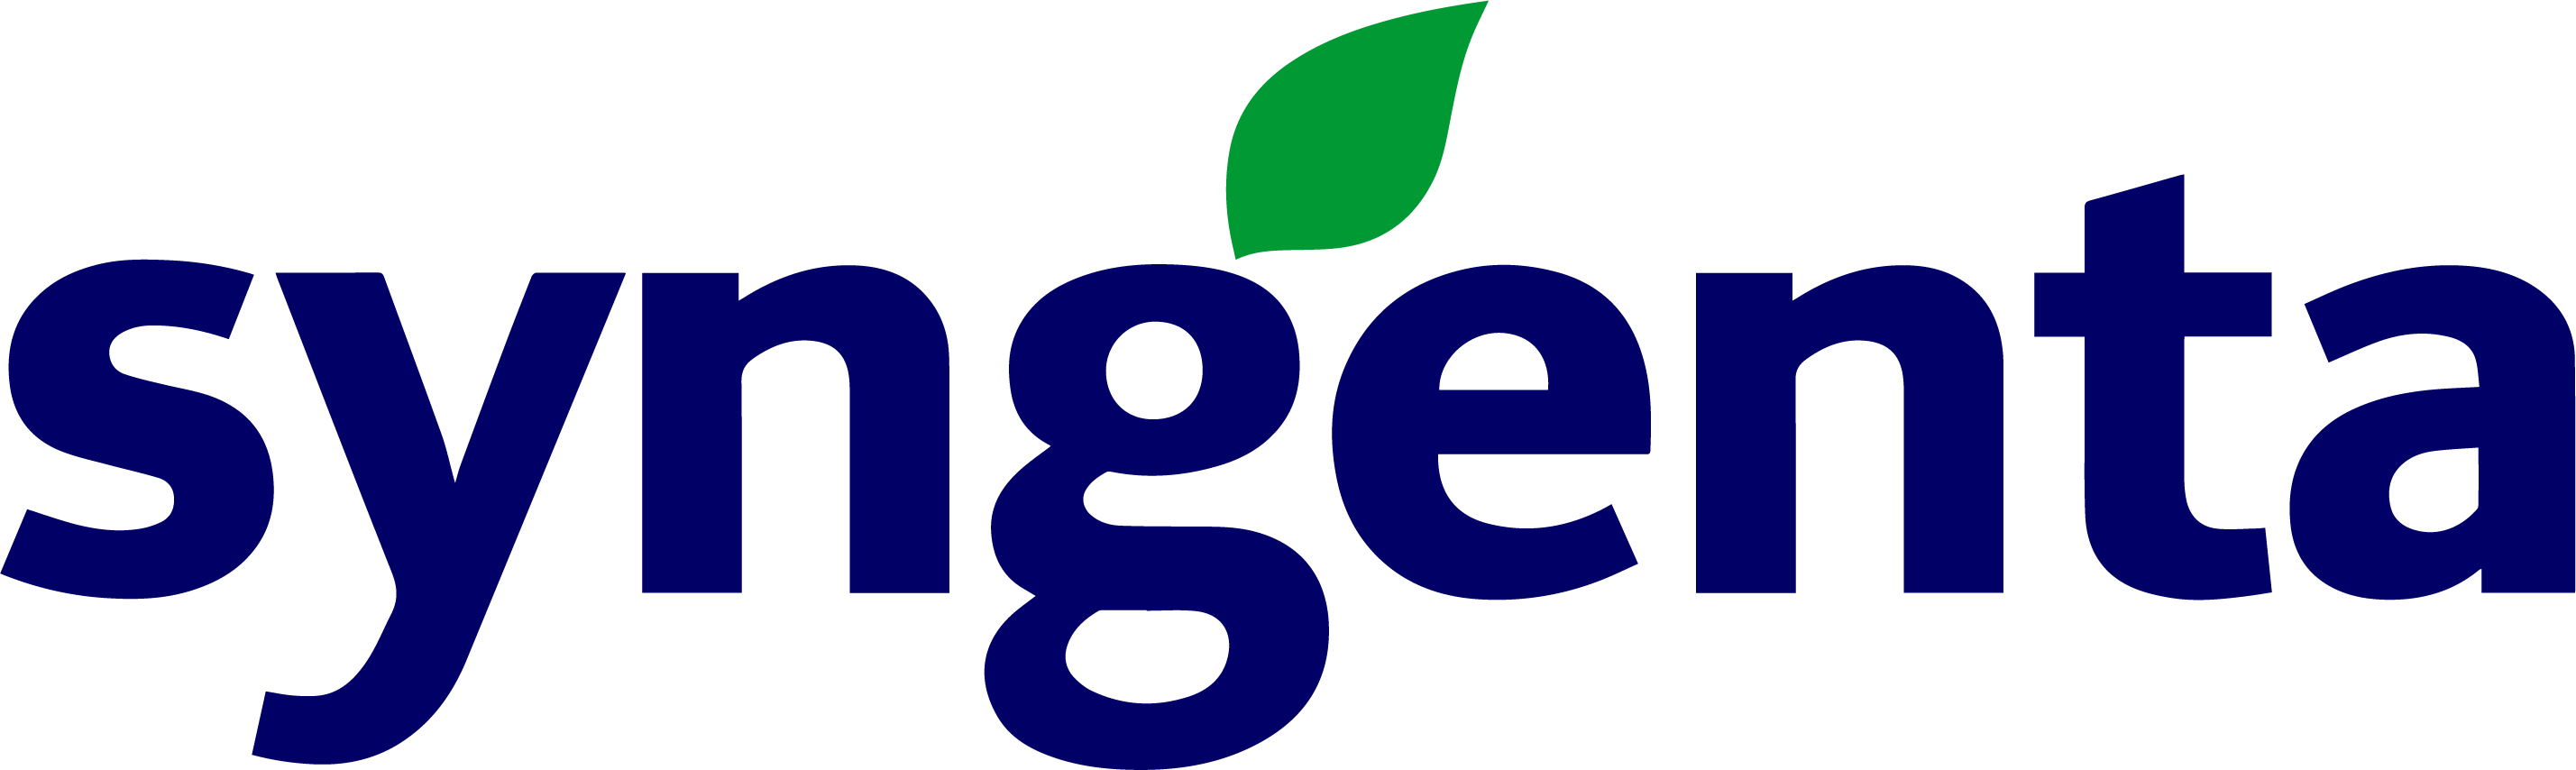 Logo Syngenta png